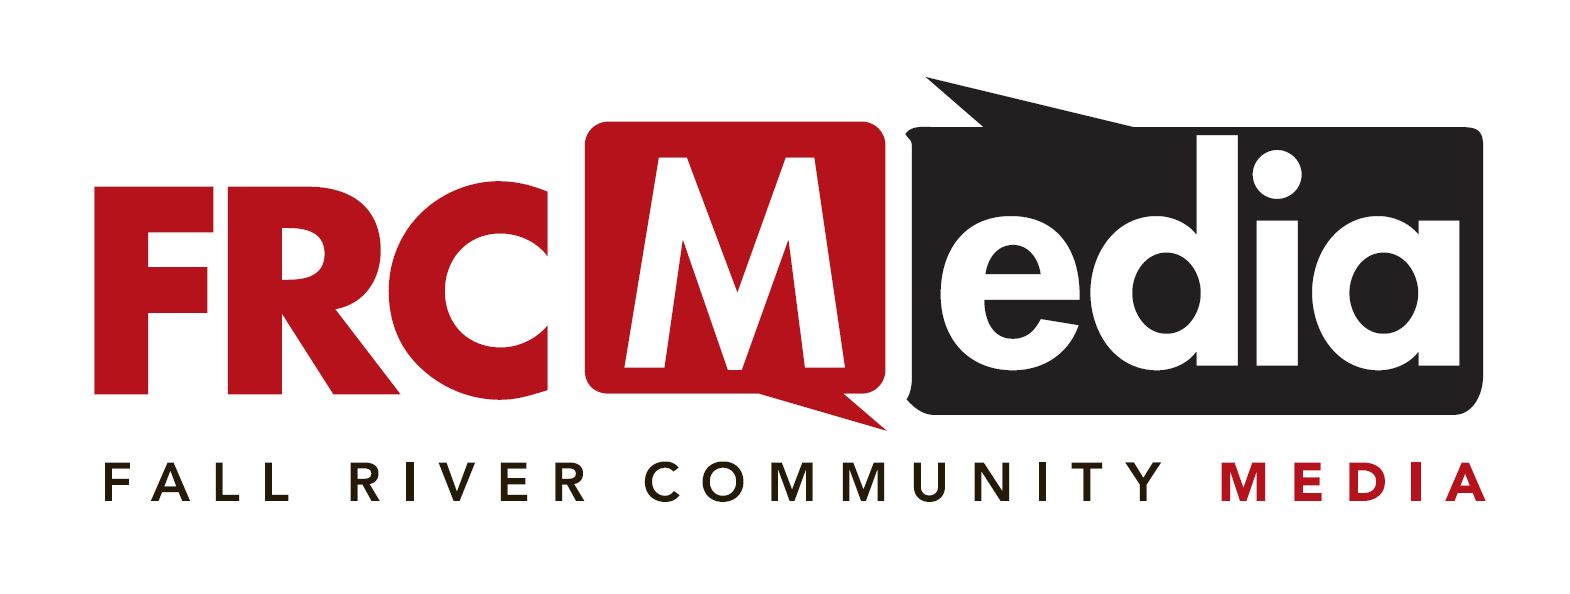 FRCMedia Station Logo